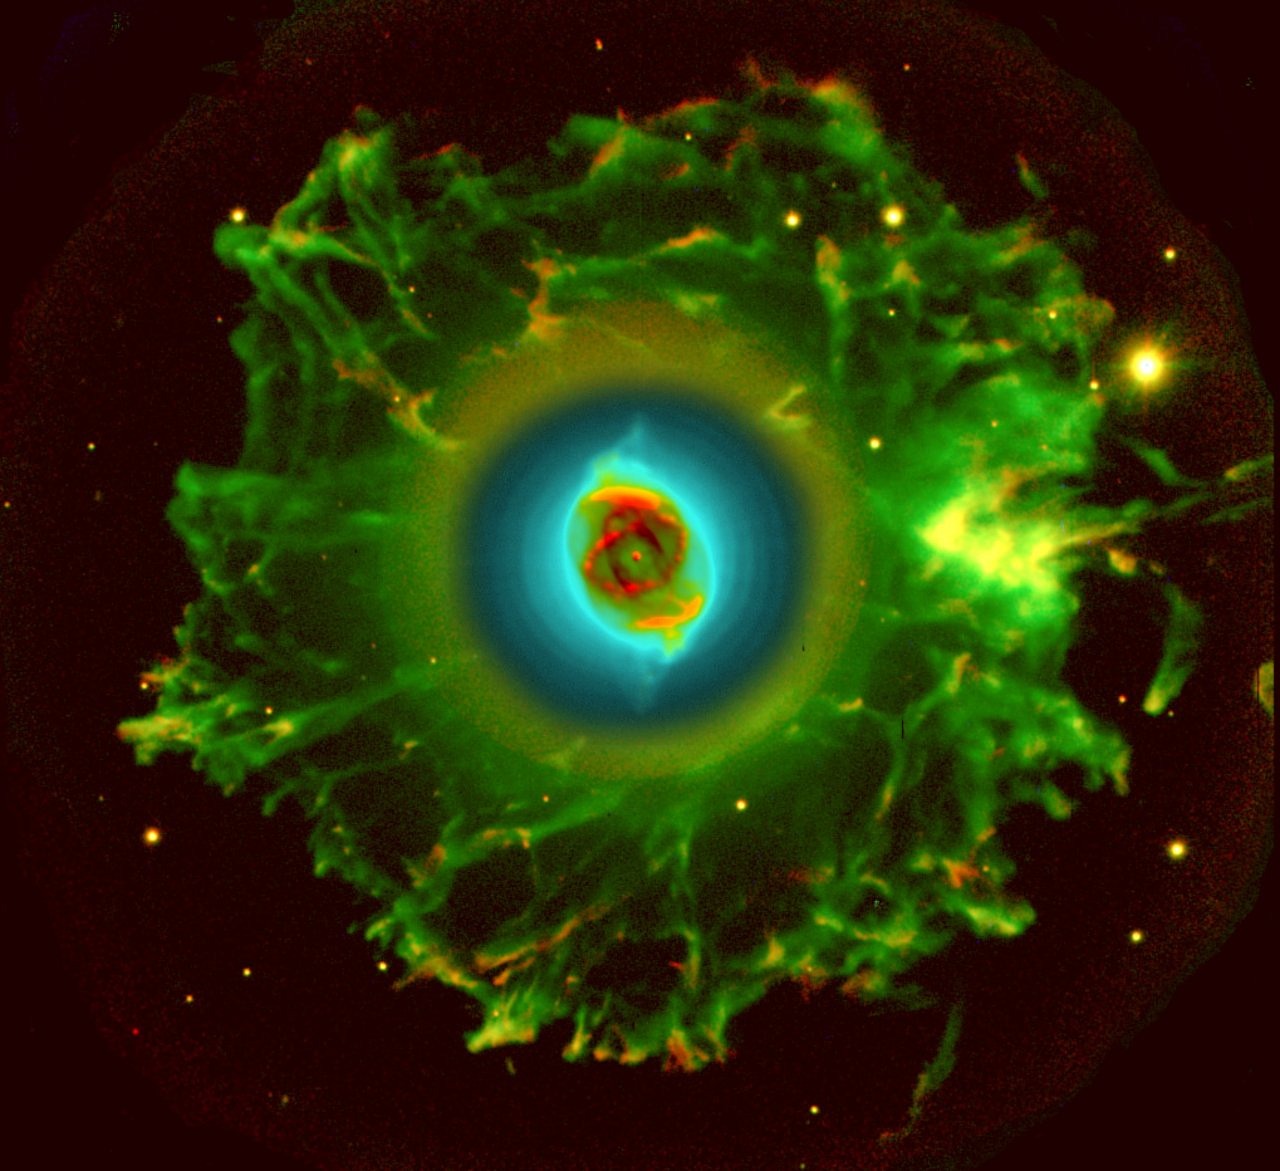 cat's eye nebula ngc 6543 planetary fog free photo